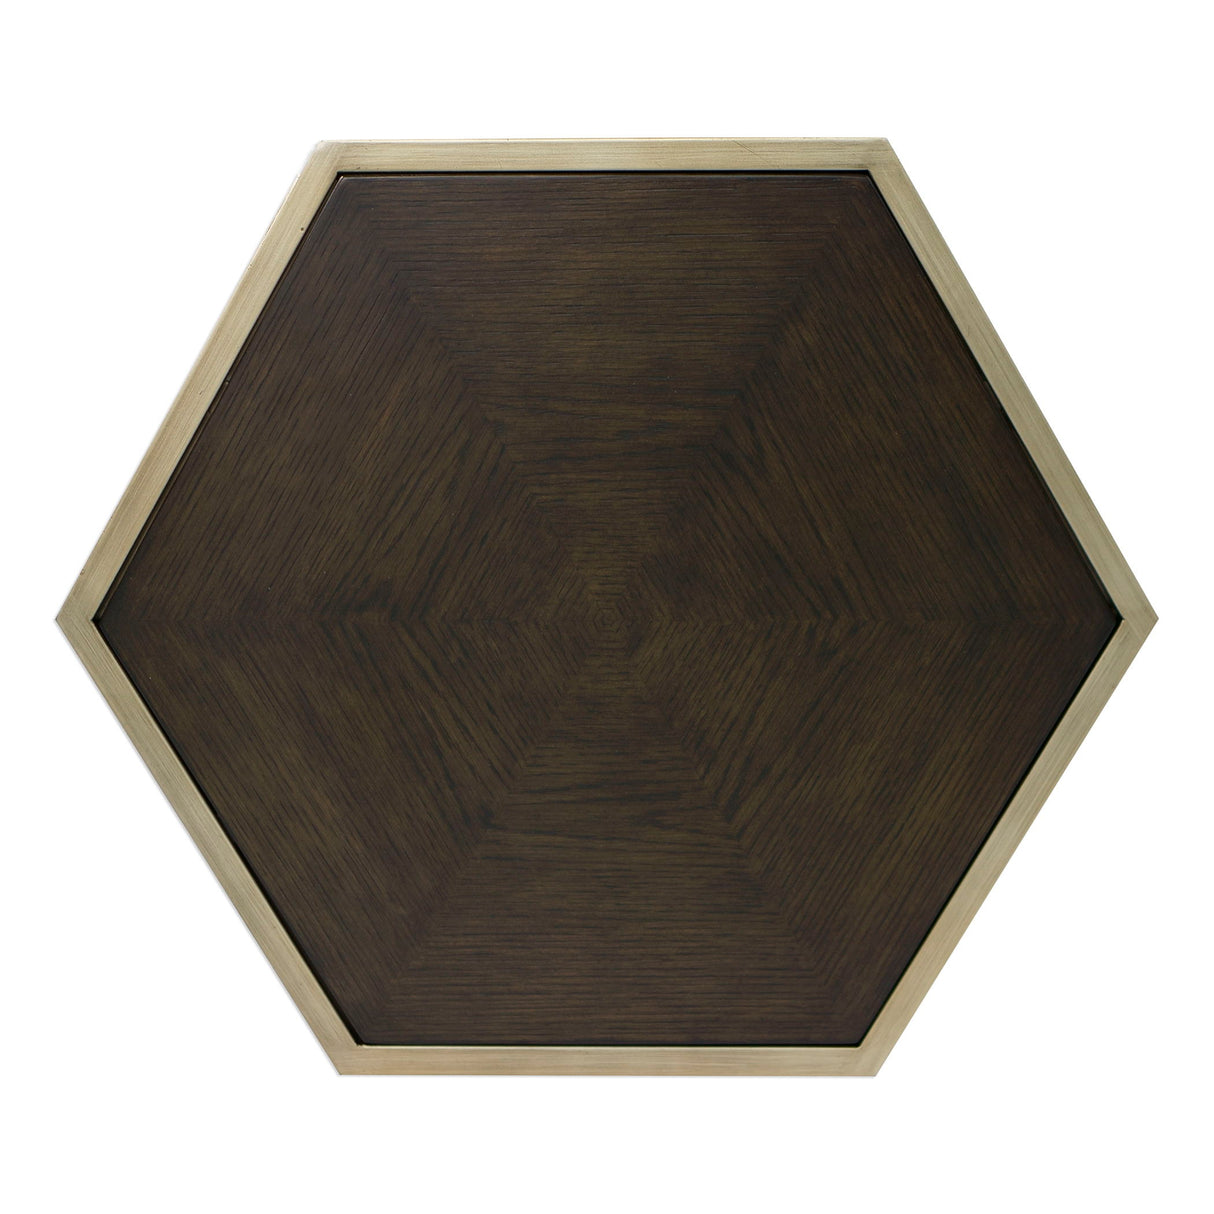 Alicia - Geometric Accent Table - Brown, Dark